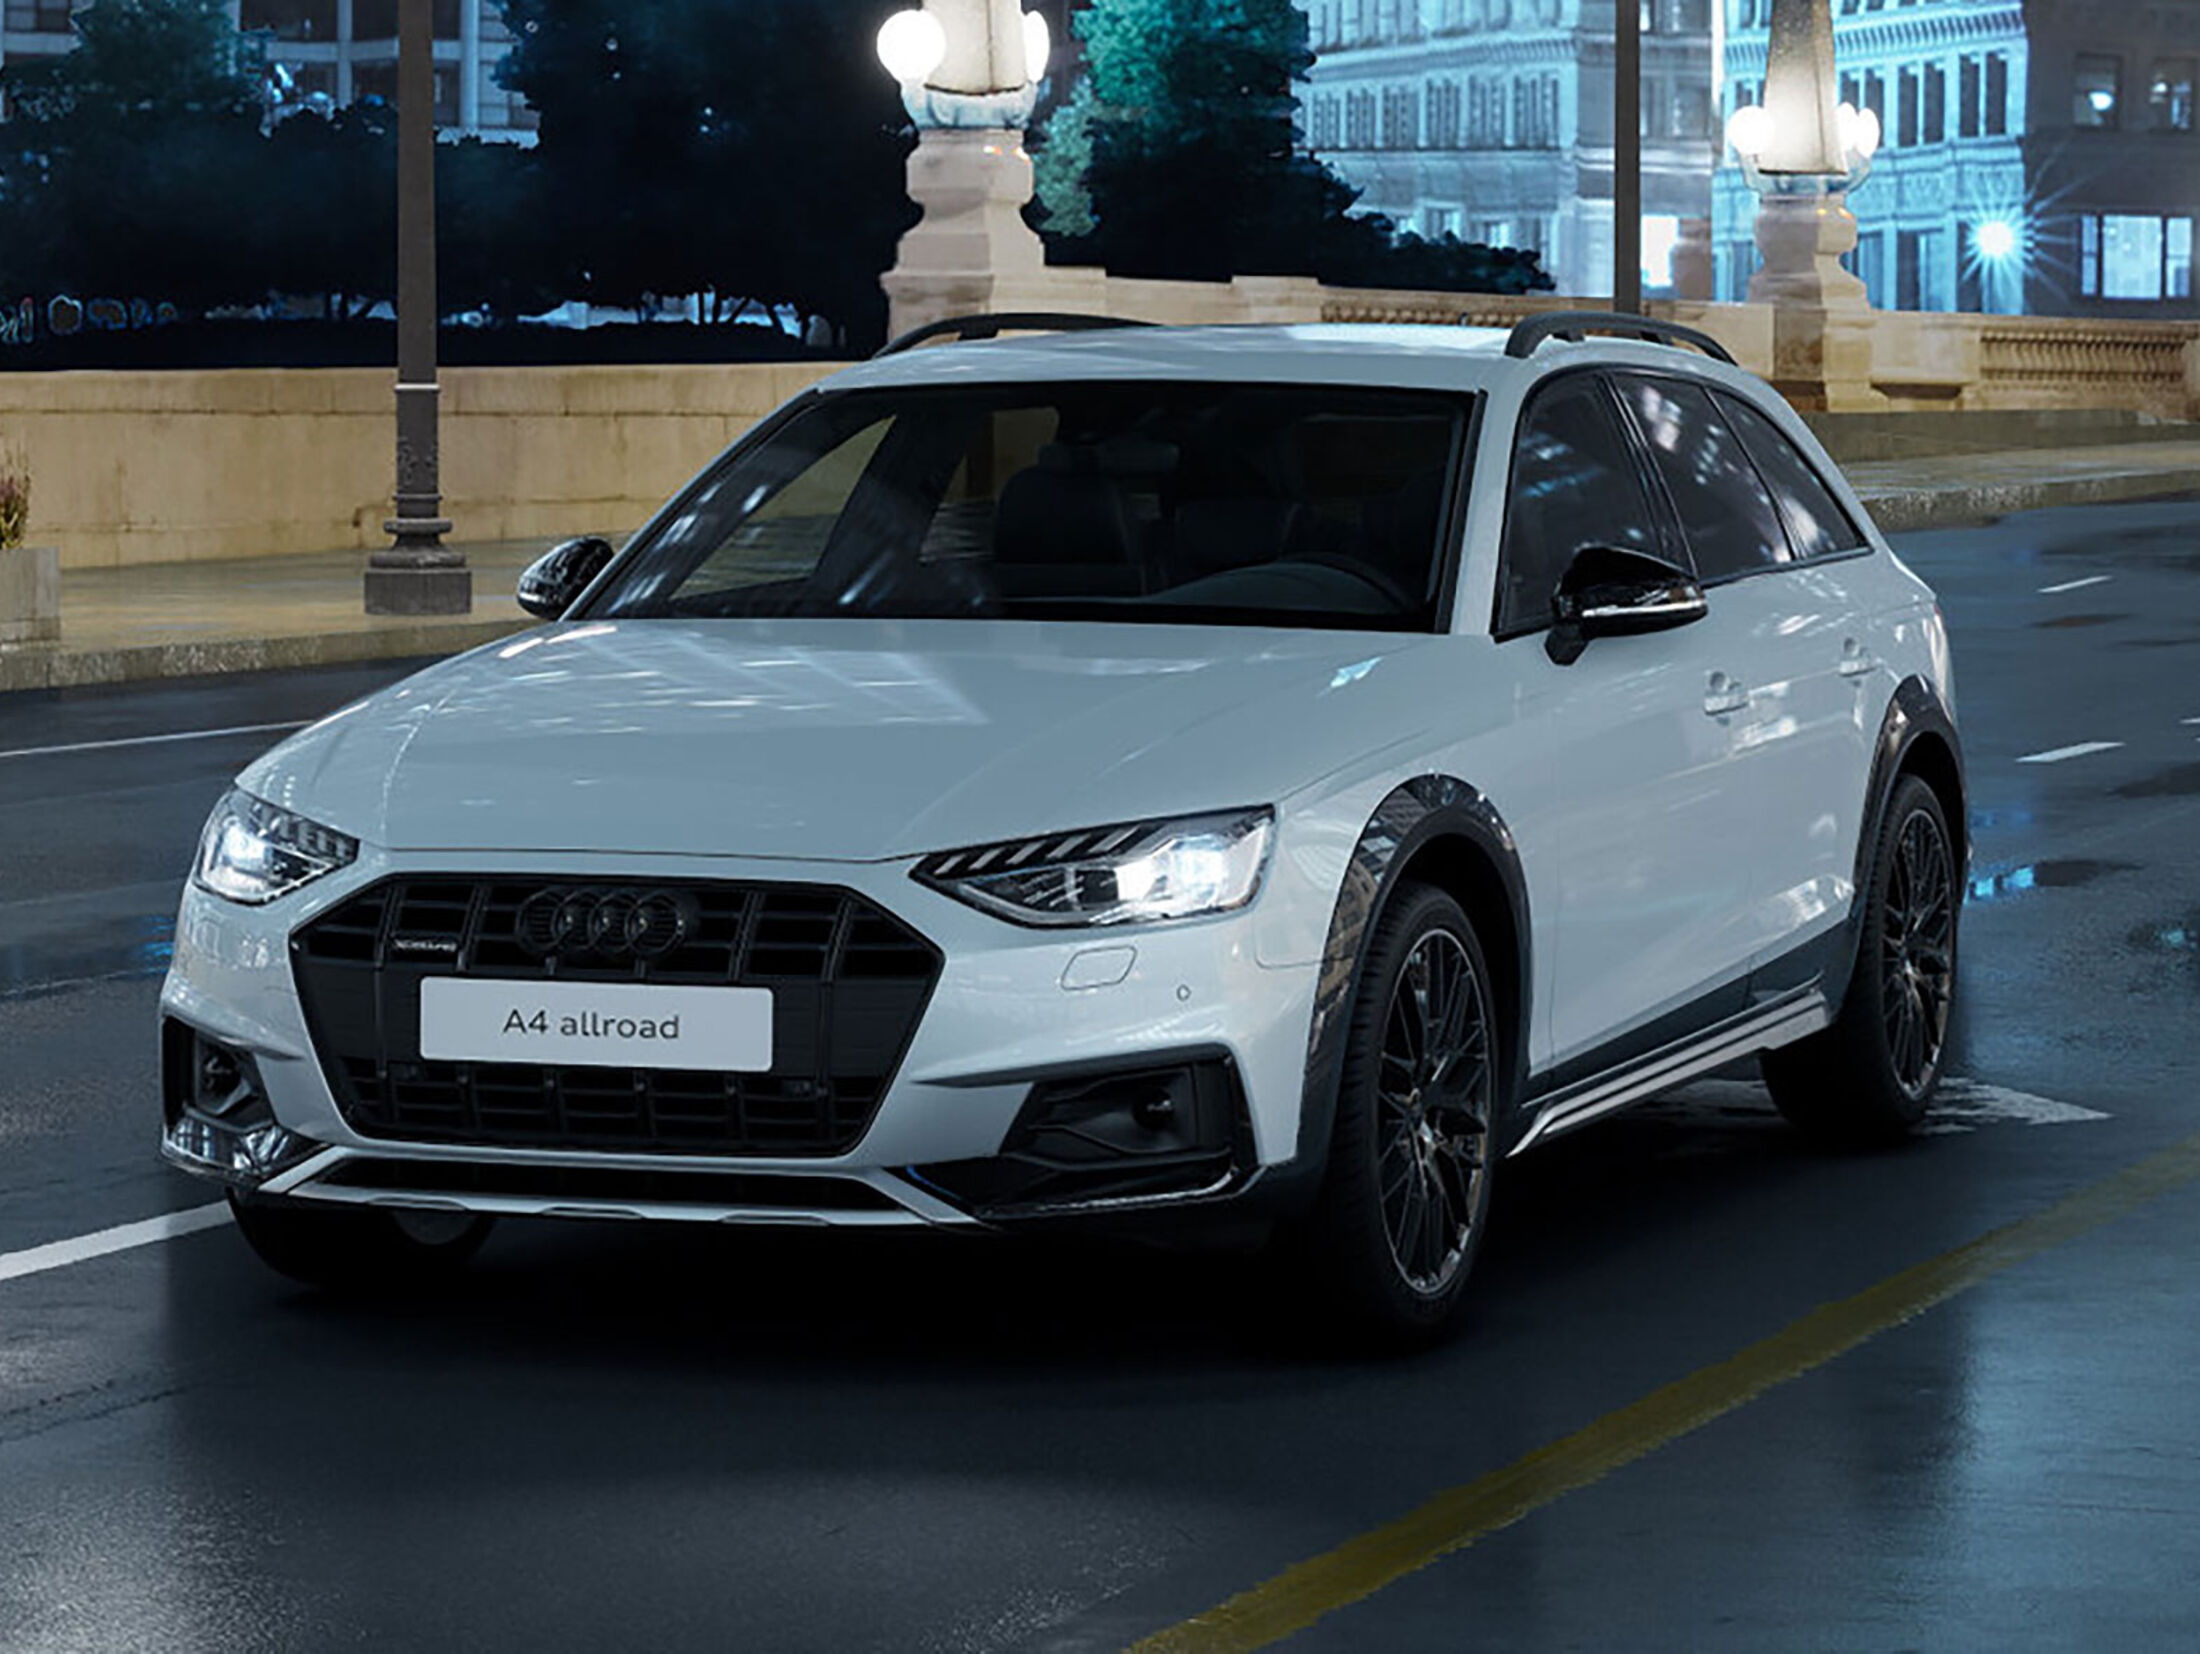 https://imgr1.auto-motor-und-sport.de/Audi-A4-Allroad-Quattro-Heritage-Edition-Spanien-jsonLd4x3-acdcfa18-2018554.jpg